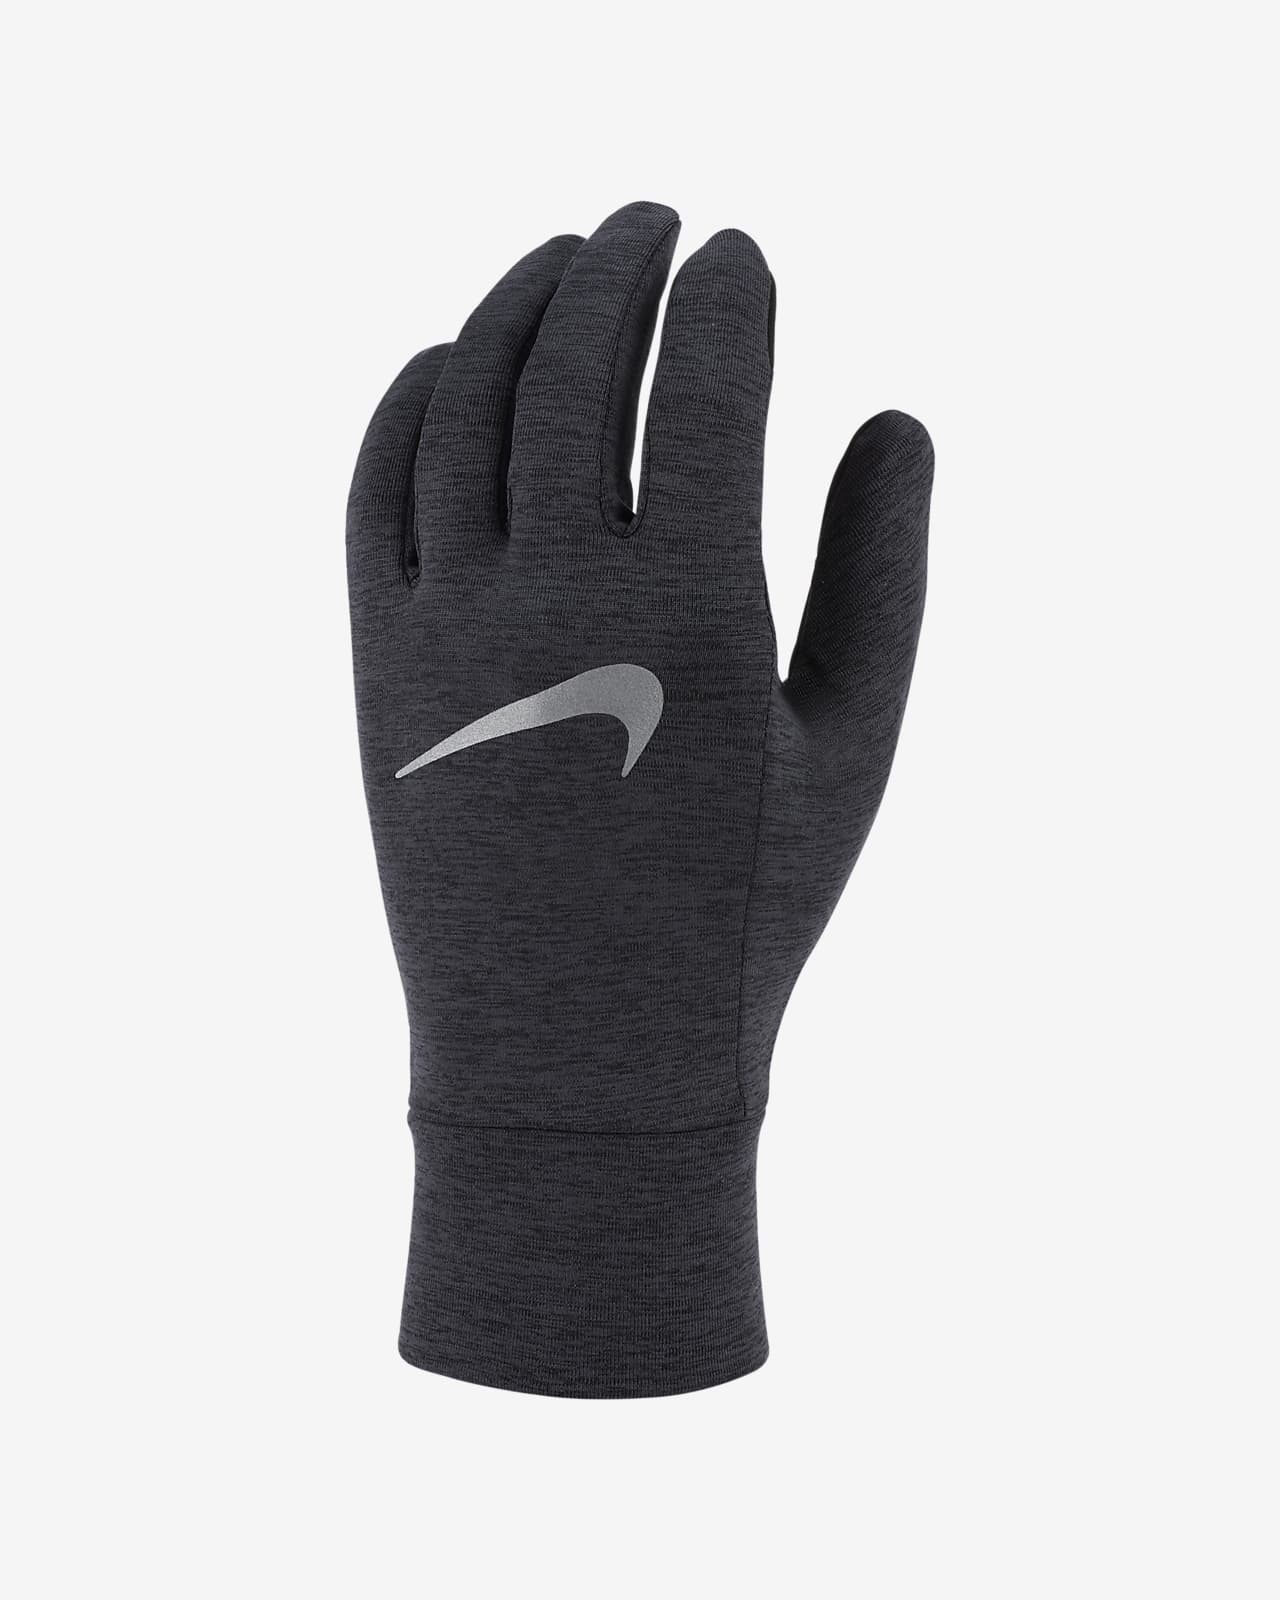 Nike Men's Fleece Running Gloves